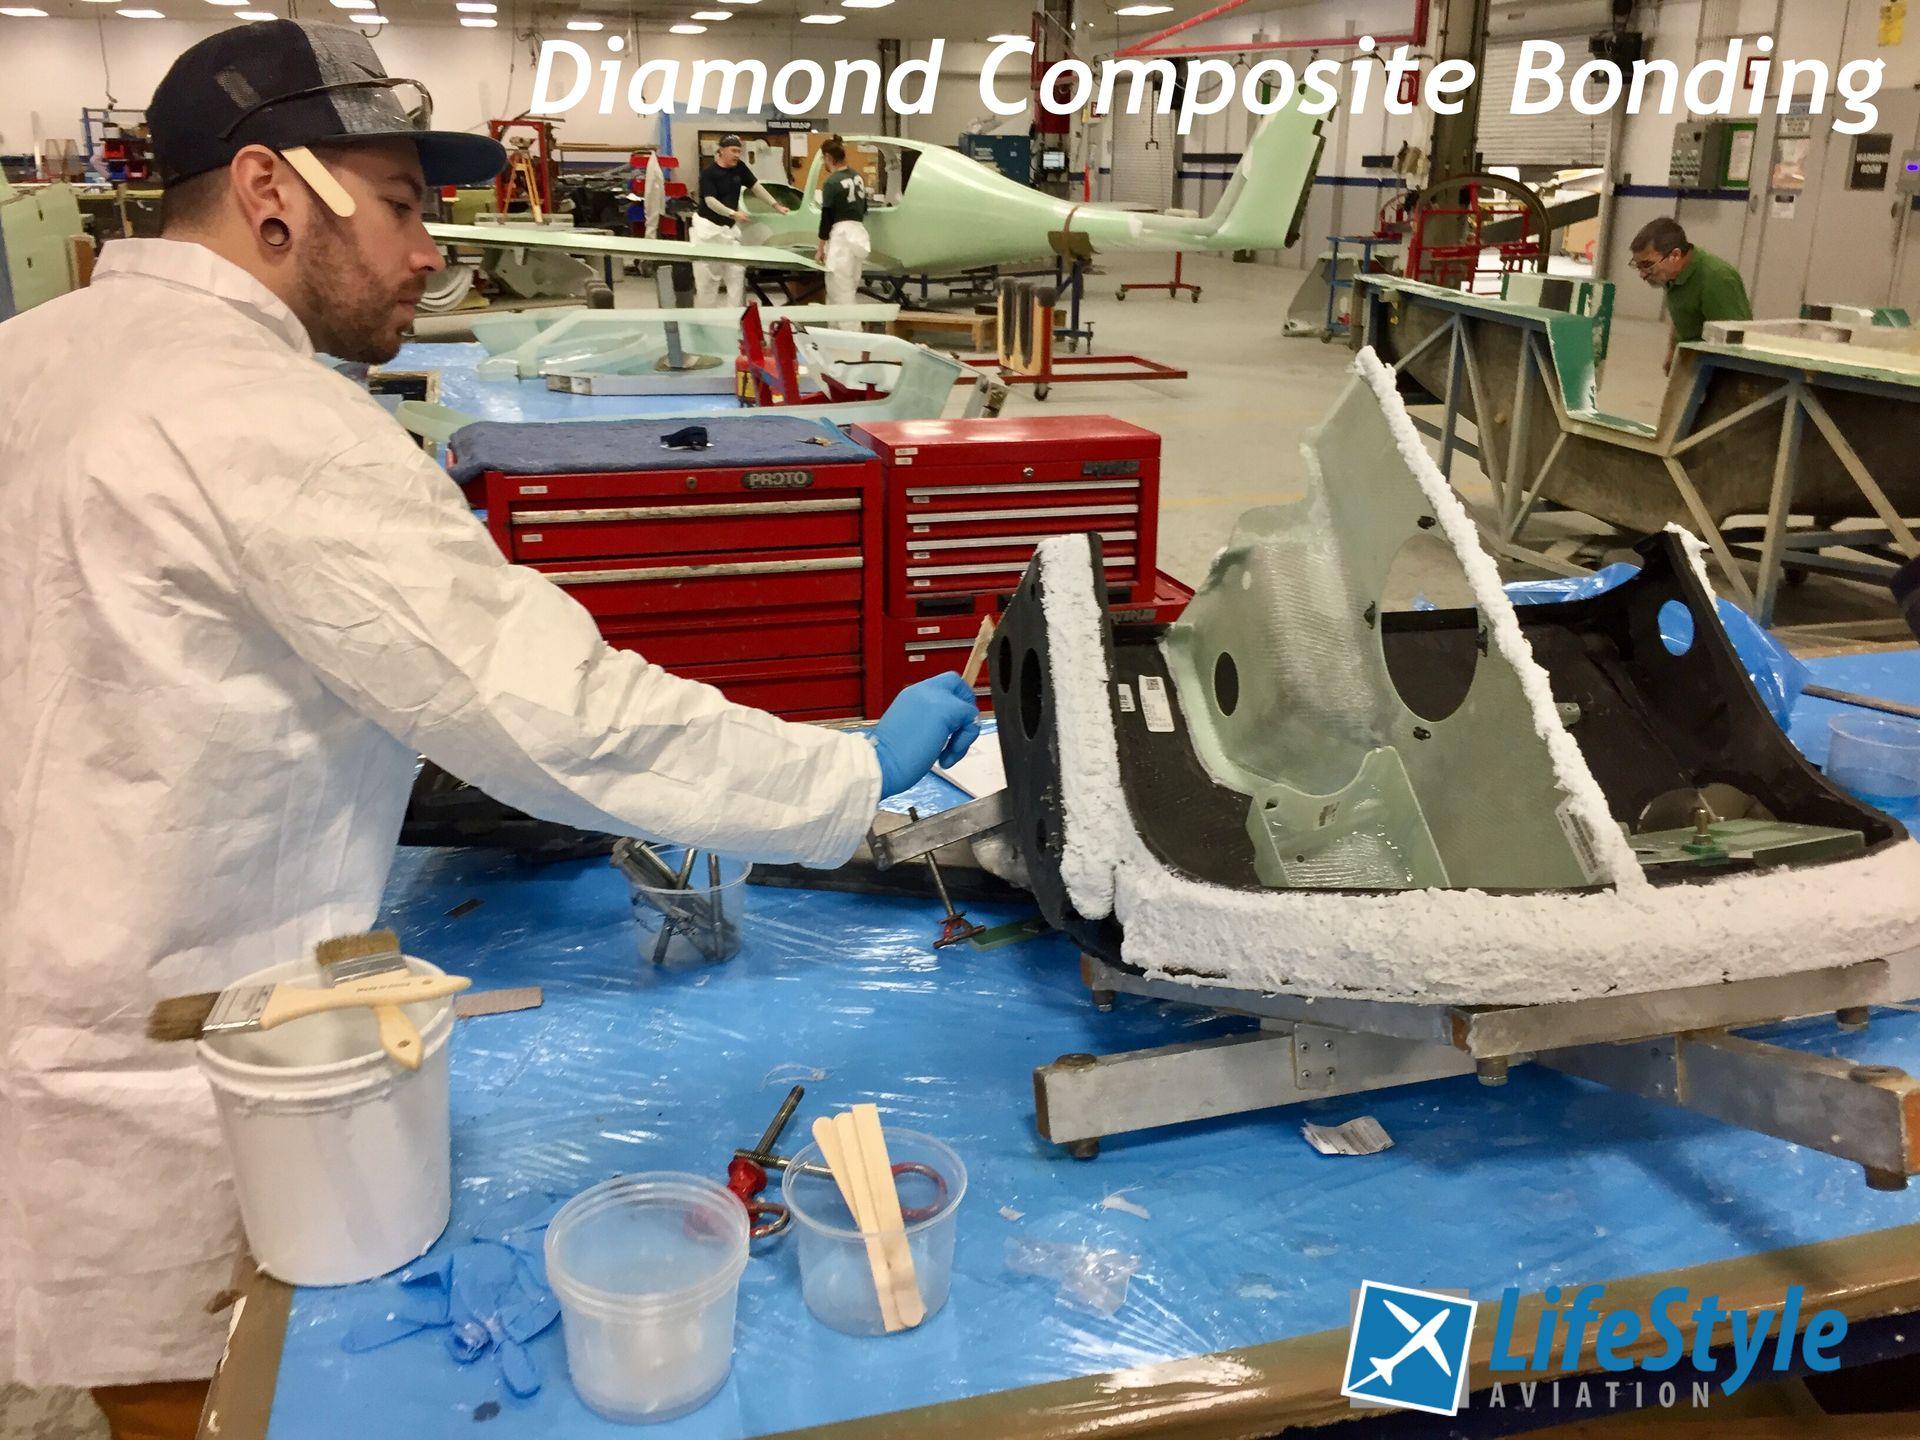 Diamond Composite Bonding